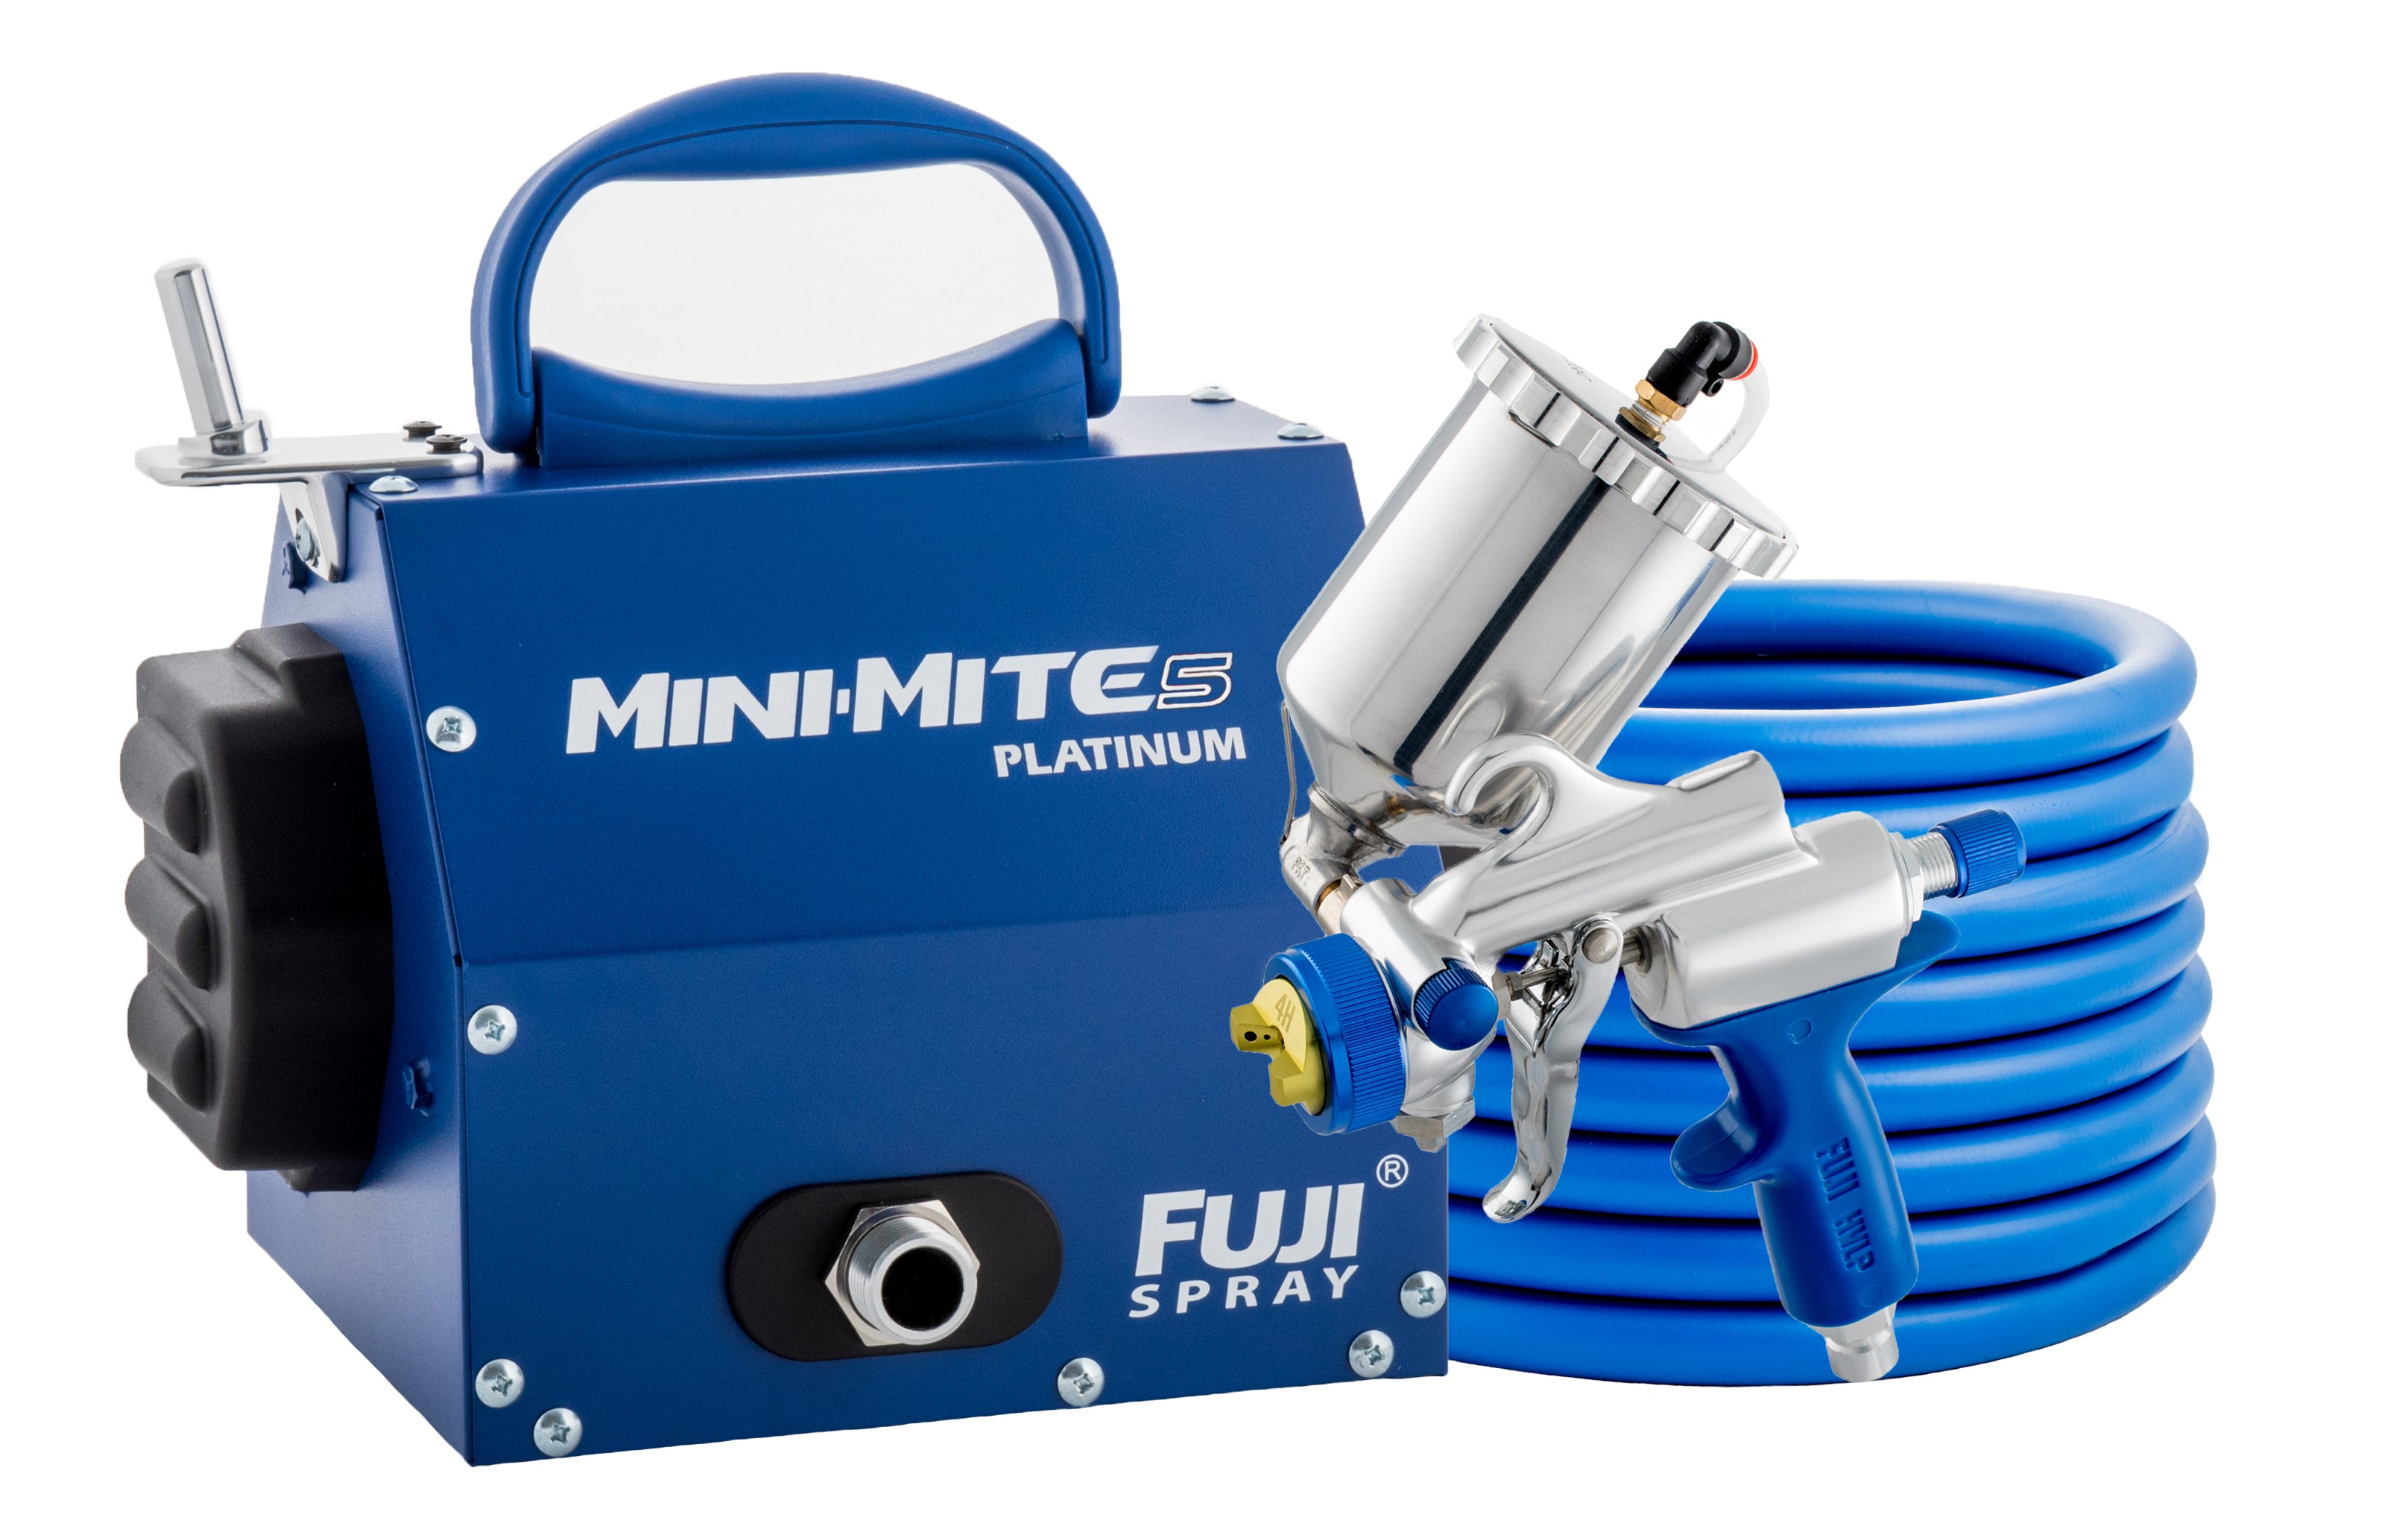 Fuji Spray Mini-Mite Platinum™ Turbine System with Spray Gun, Hose, and Turbine